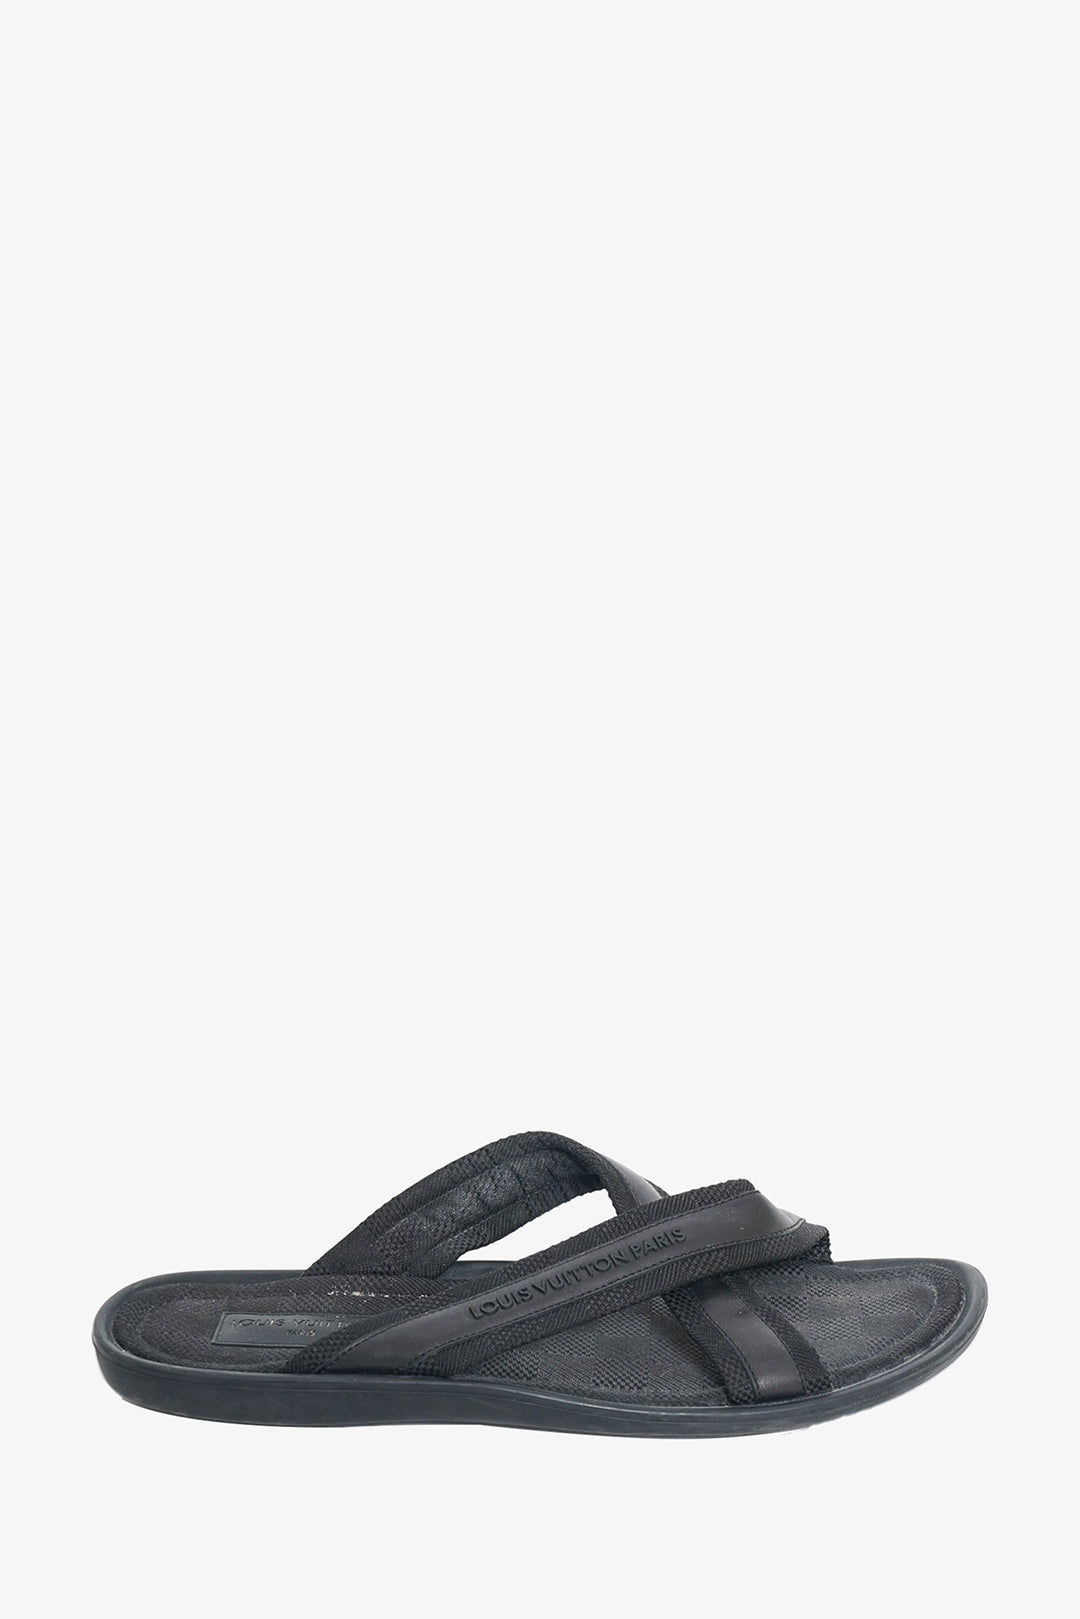 Louis Vuitton Panama Sandal, Black, 11